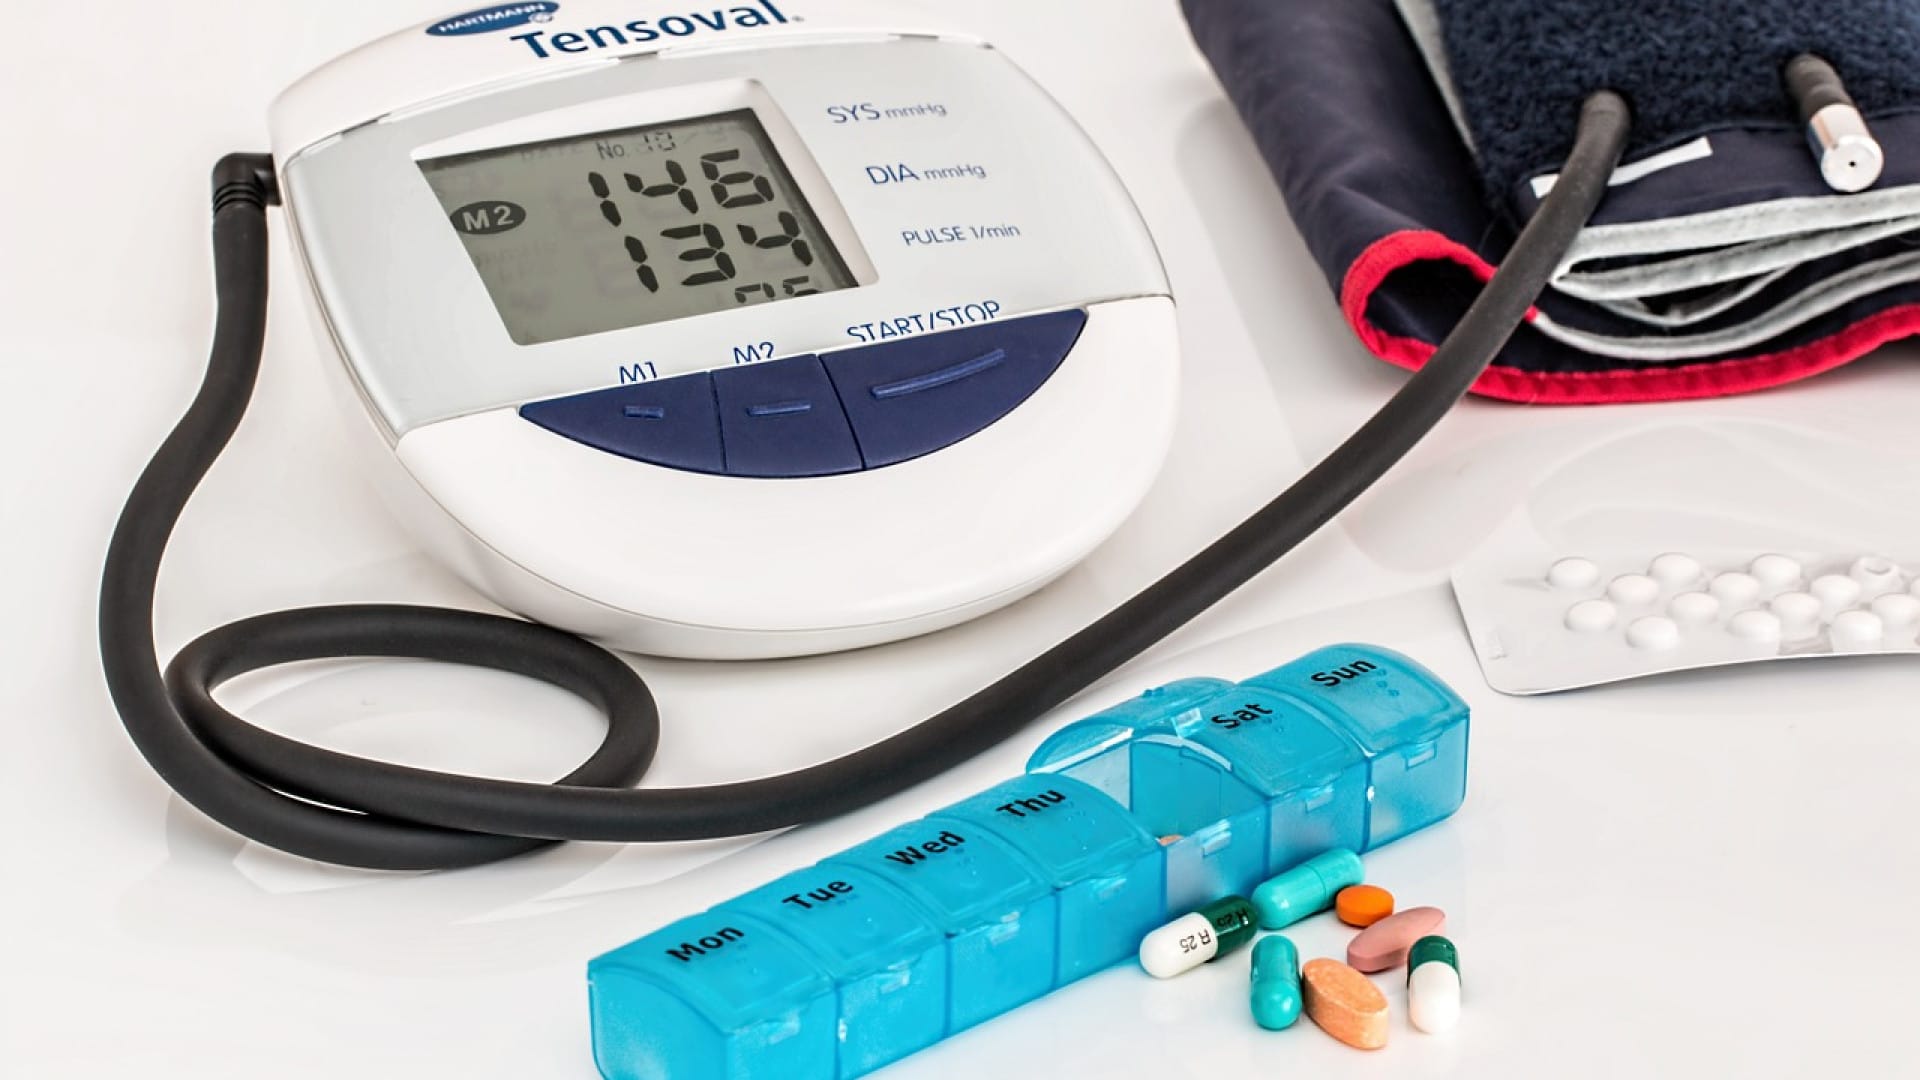 Tensiomètre électronique avec affichage des valeurs, brassard et pilulier hebdomadaire contenant divers médicaments.